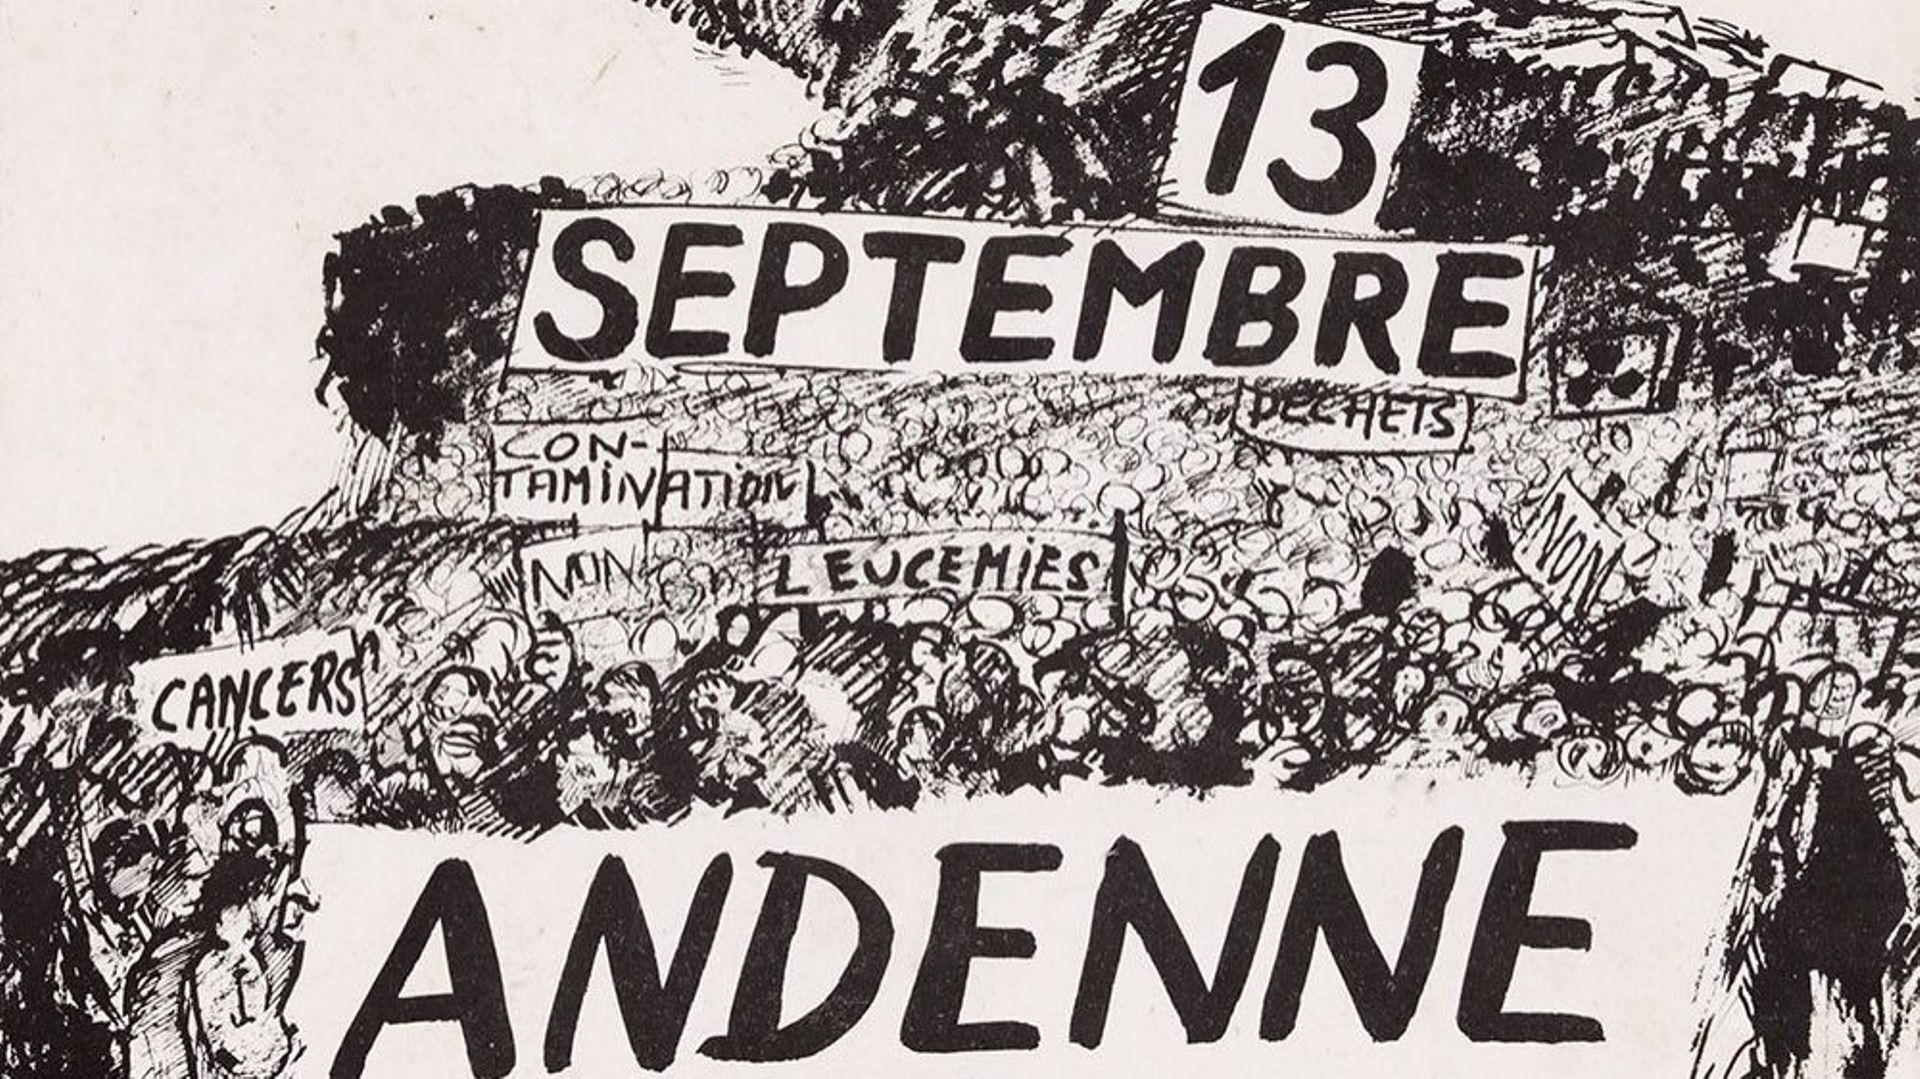 Affiche de mobilisation pour le NON à Andenne, 1978